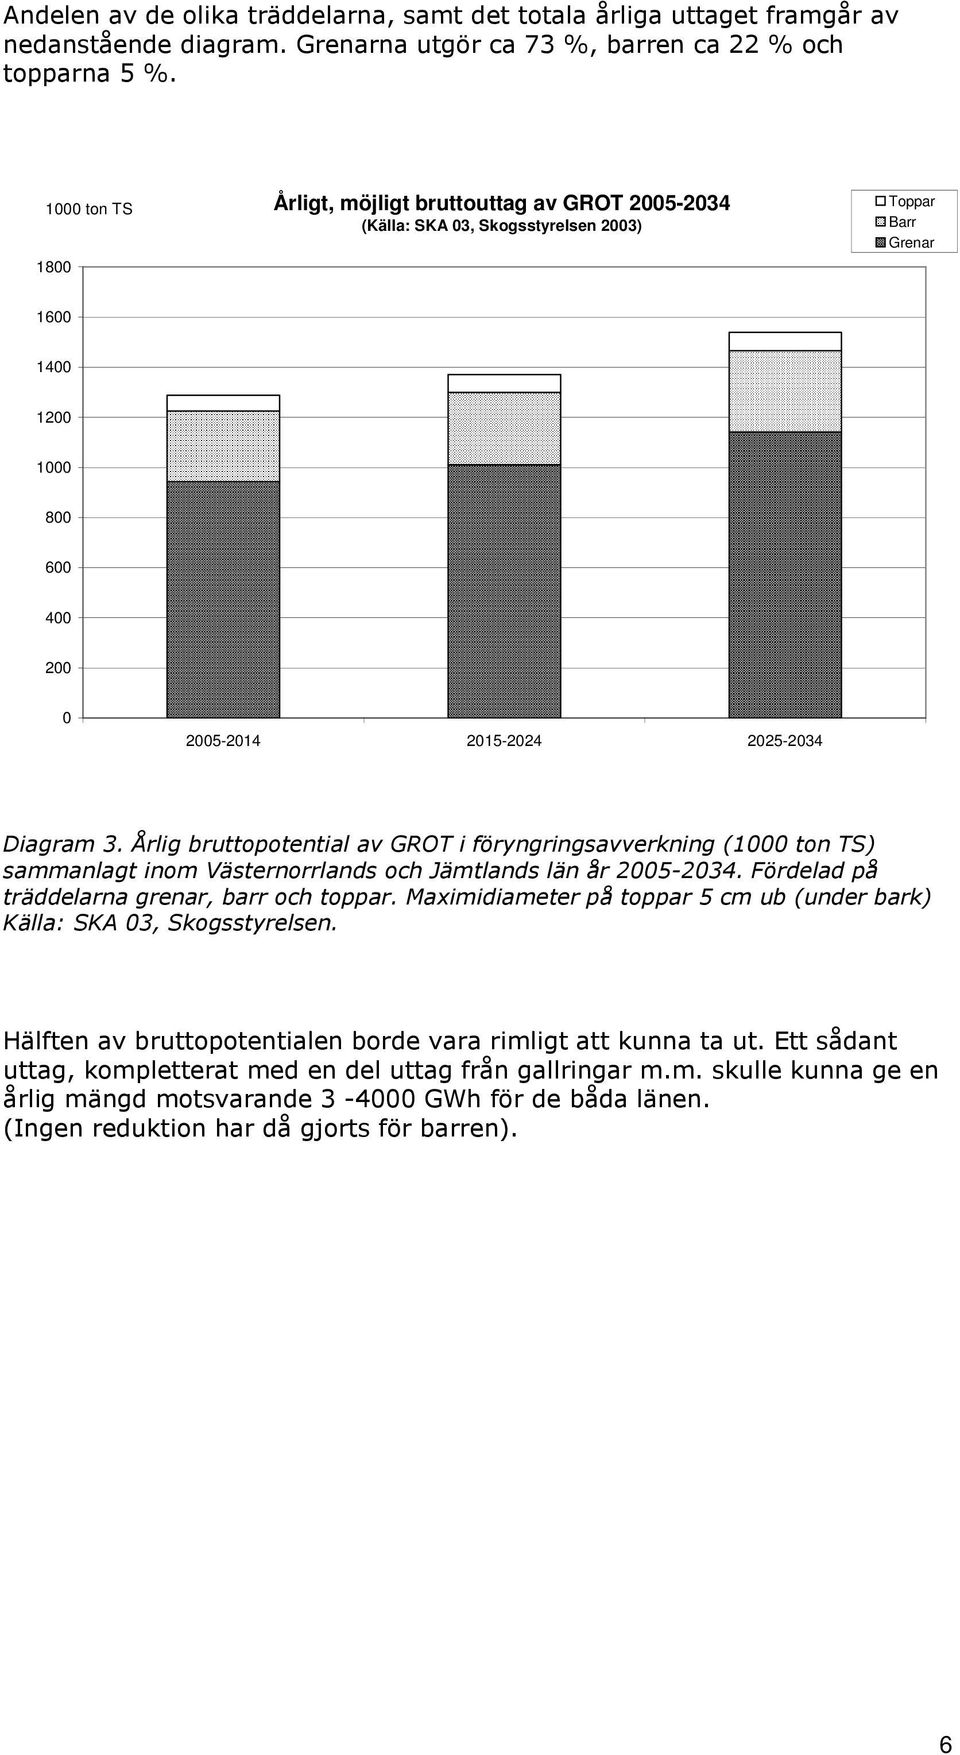 Årlig bruttopotential av GROT i föryngringsavverkning (1000 ton TS) sammanlagt inom Västernorrlands och Jämtlands län år 2005-2034. Fördelad på träddelarna grenar, barr och toppar.